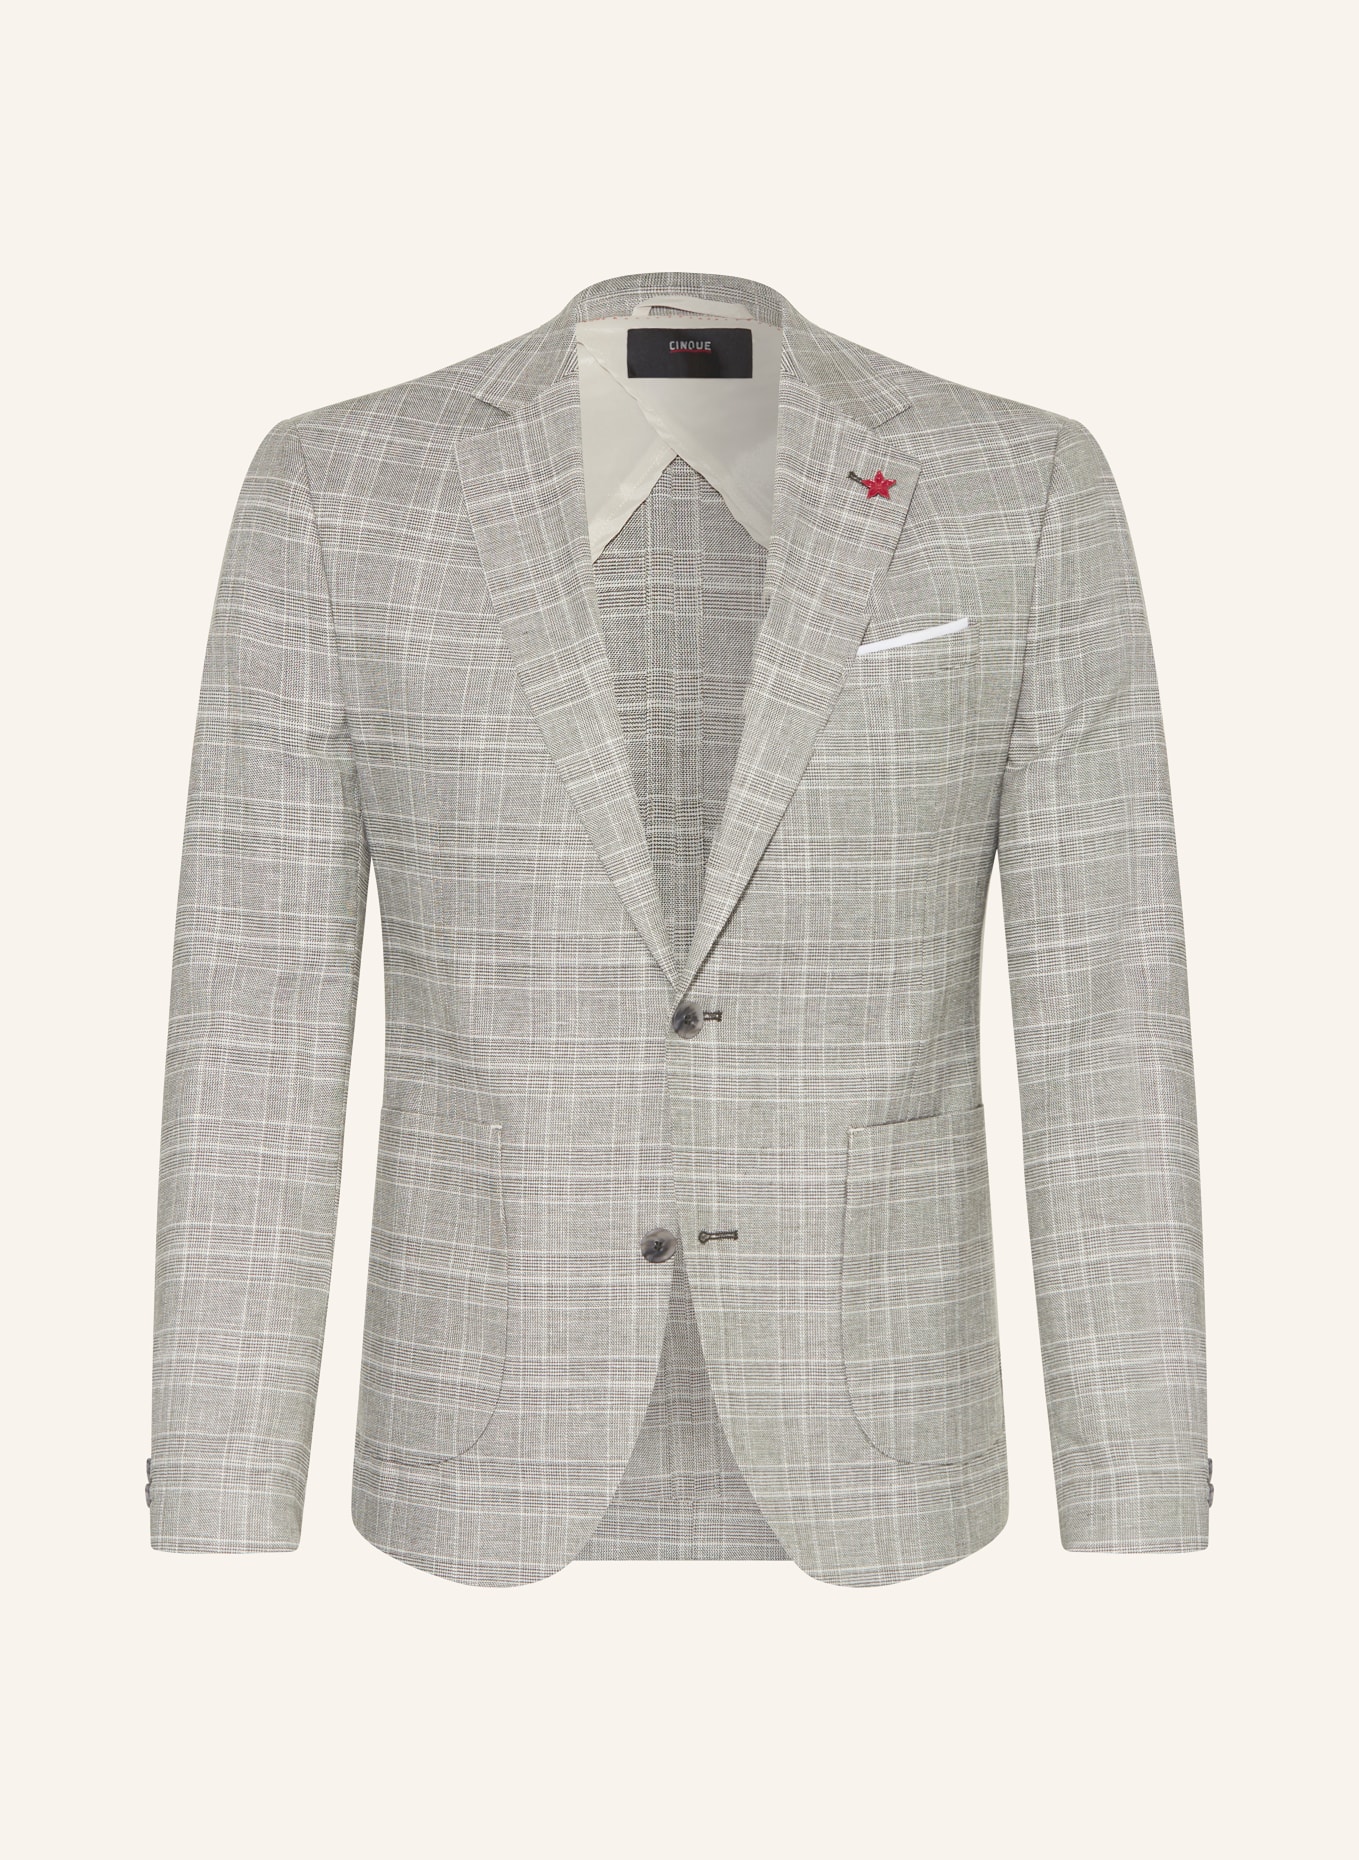 CINQUE Suit jacket CIDATI regular fit, Color: 82 hellgrUEn (Image 1)